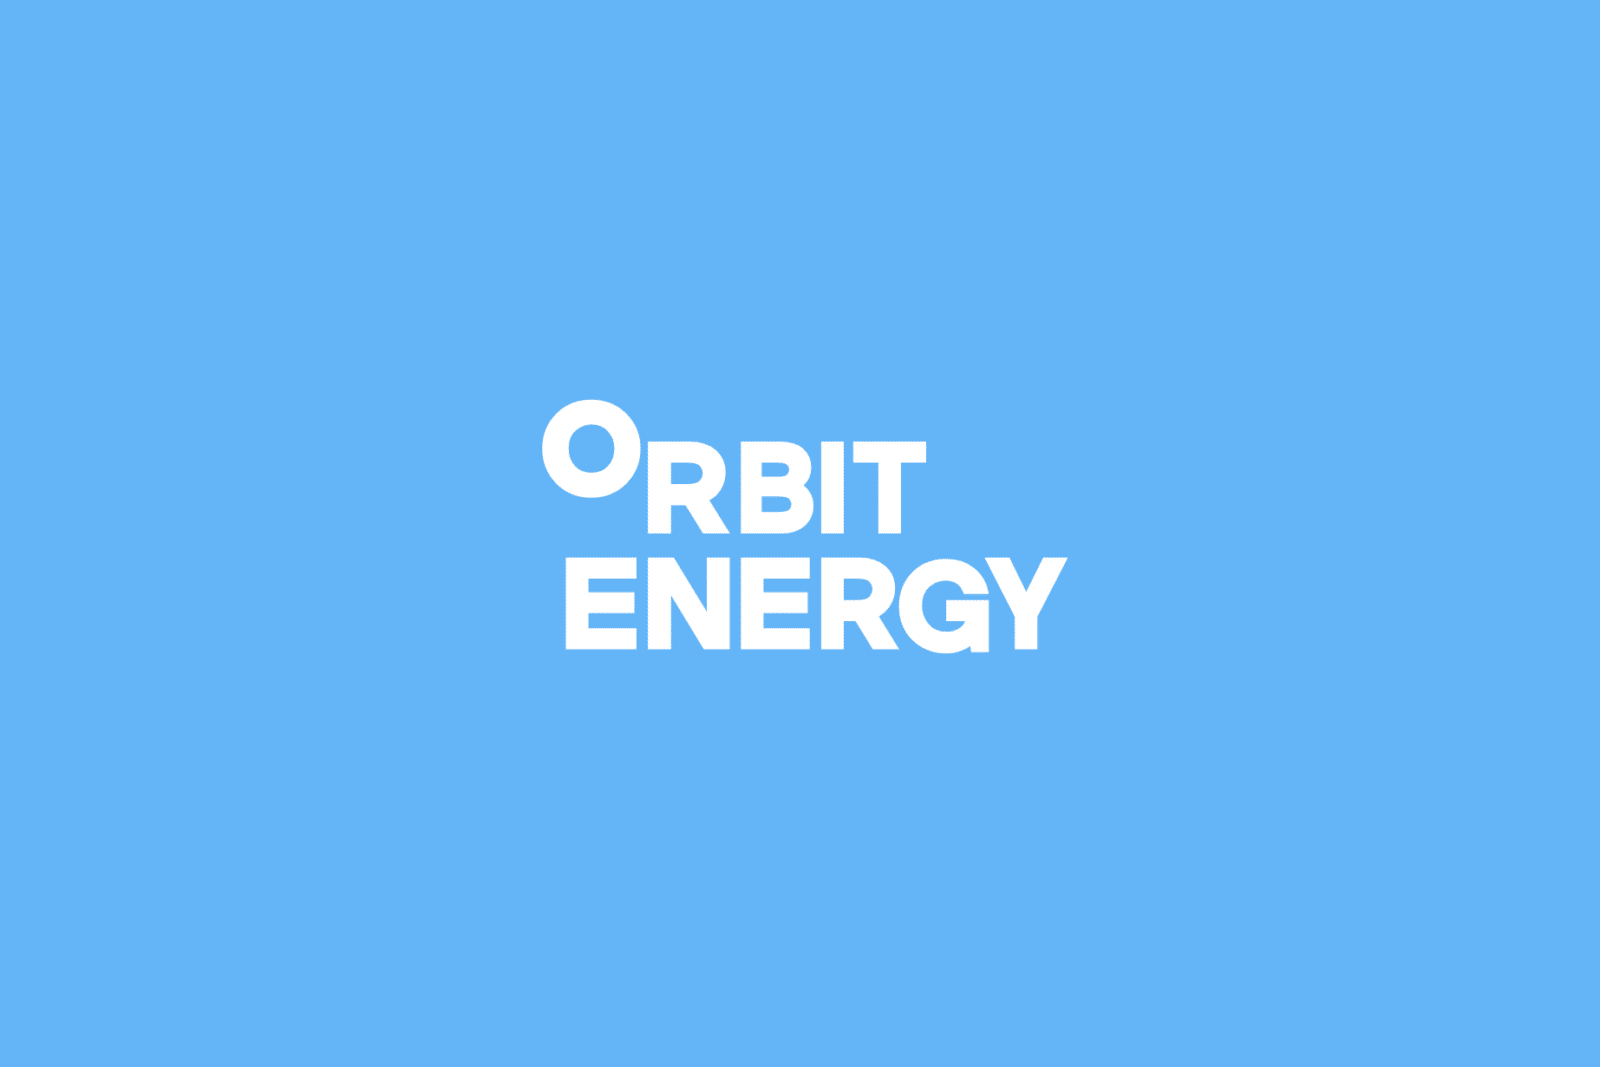 orbit energy